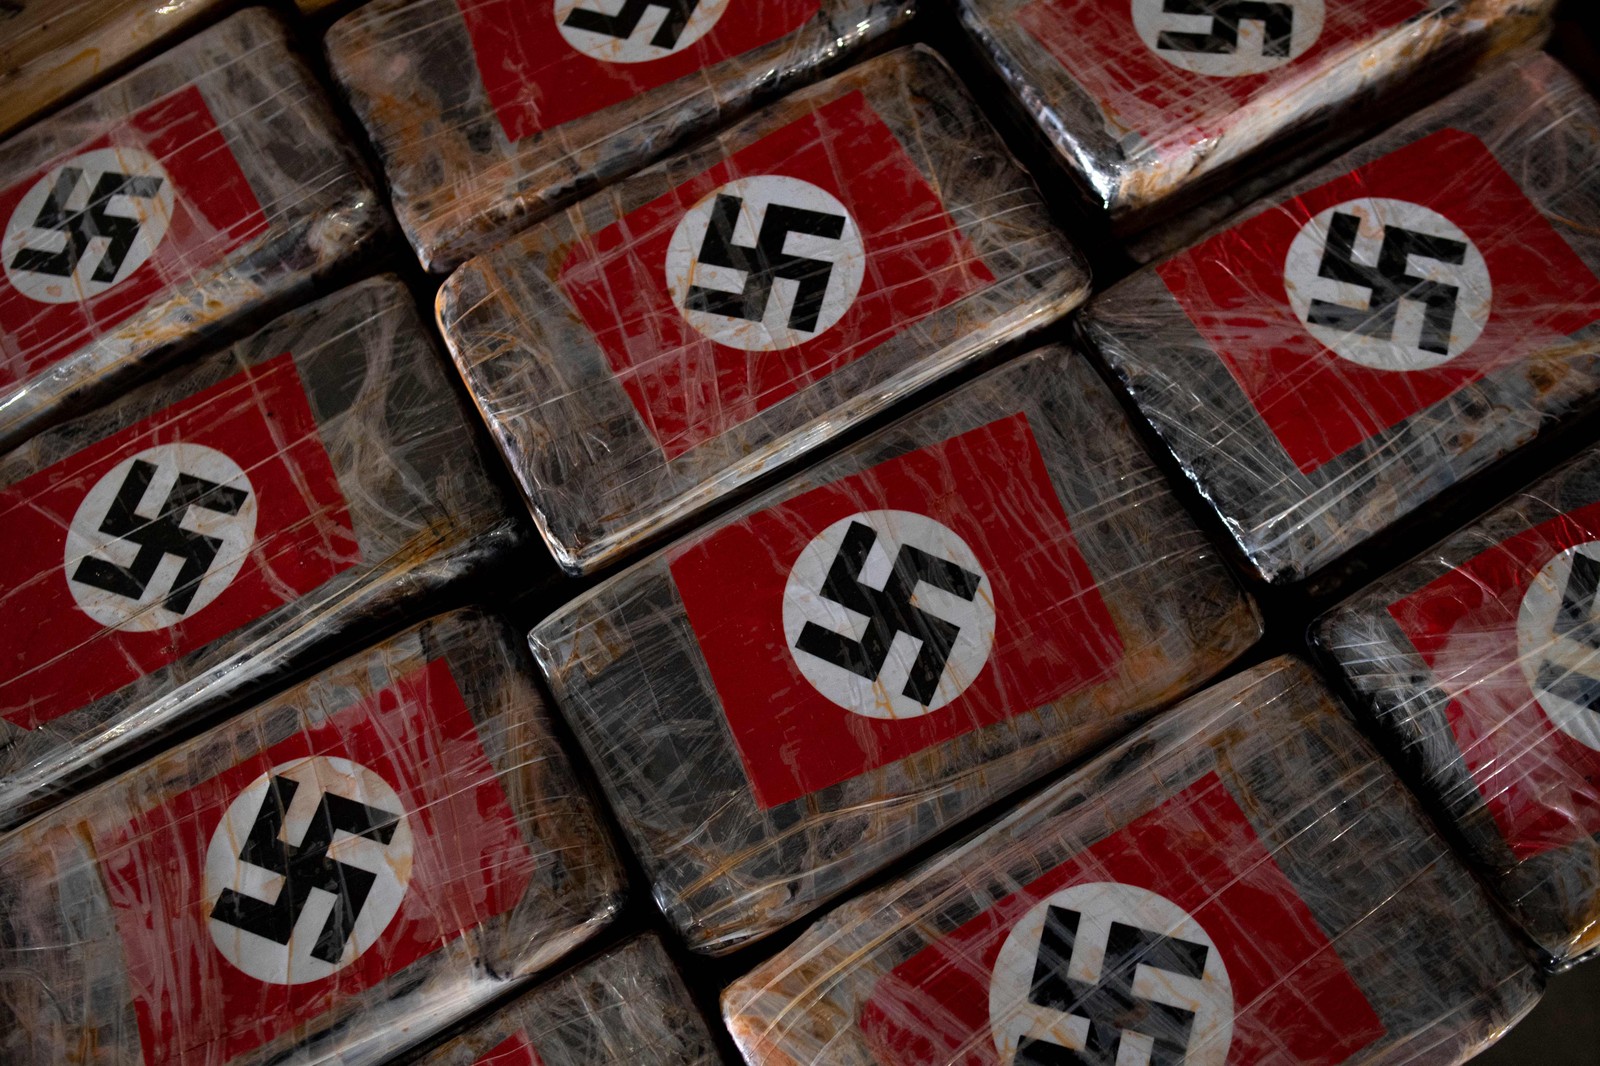 Espanha apreende 9,5 toneladas de cocaína em pacotes estampados com símbolos nazistas e marcas de luxo — Foto: Reprodução